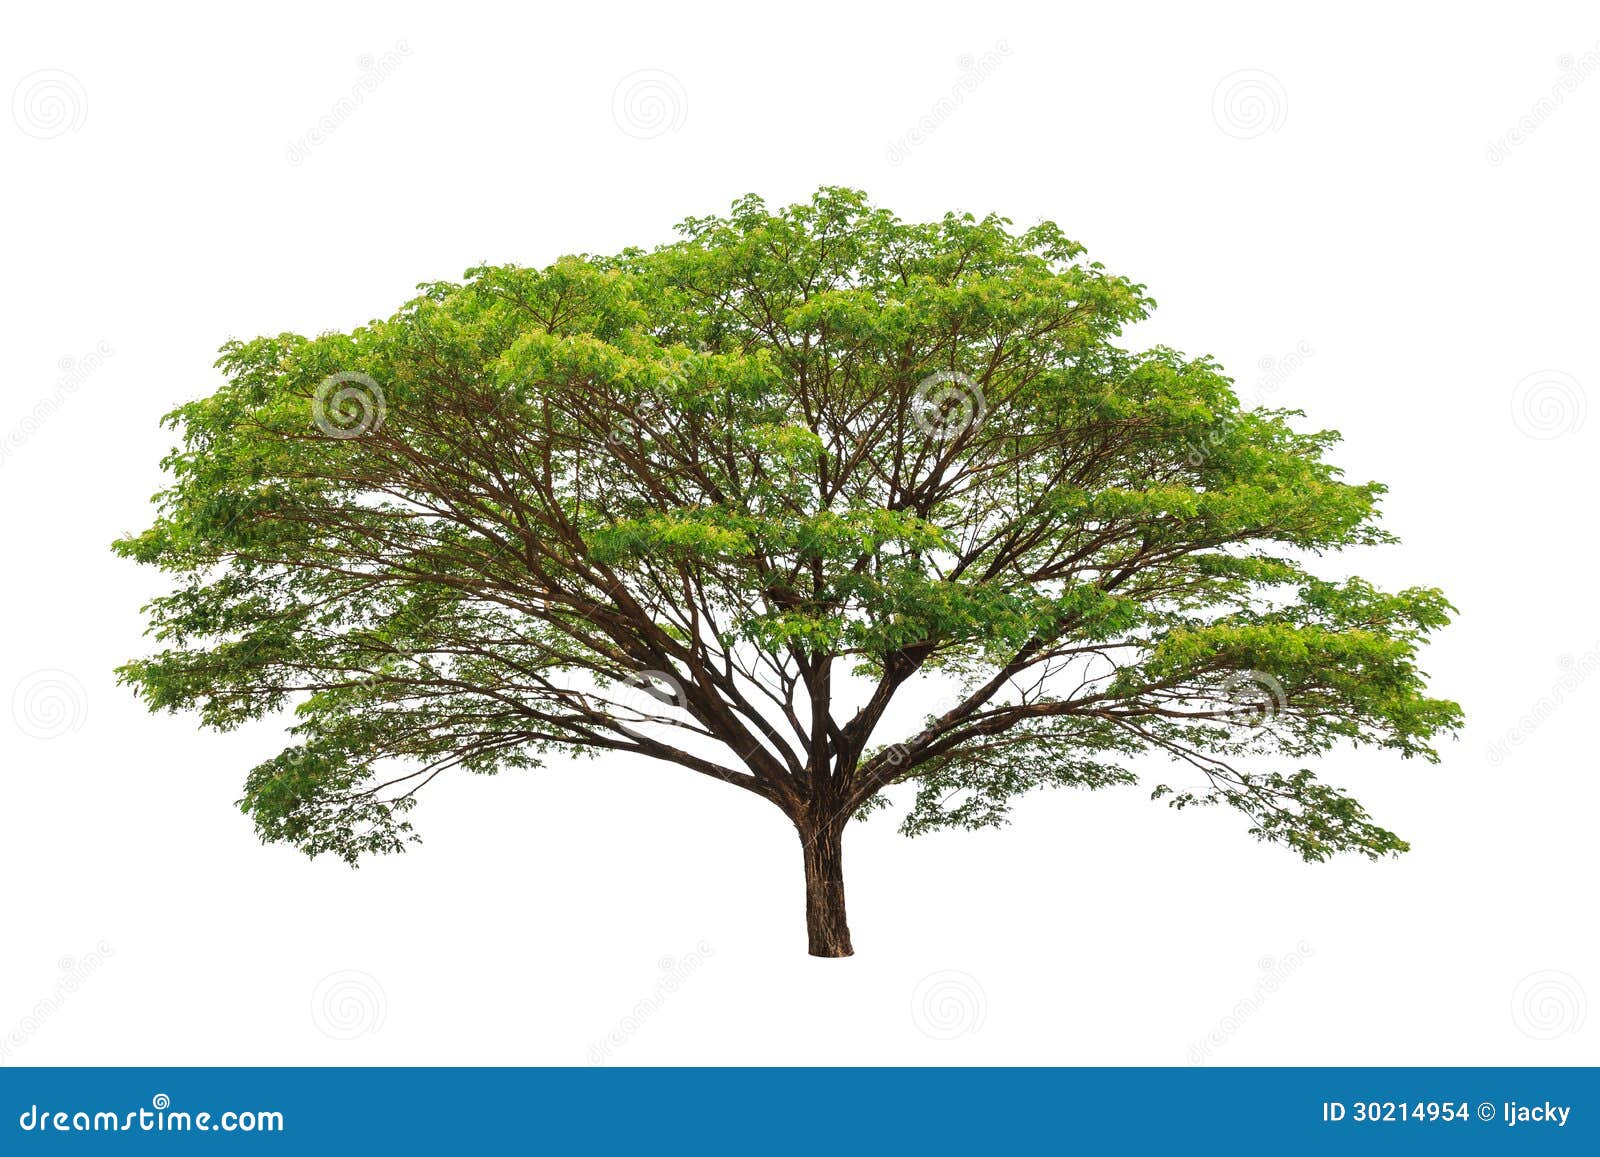 雨豆树在公园 库存图片. 图片 包括有 路线, 环境, 室外, 空白, 外面, 背包, 公园, 庭院, 本质 - 84062417